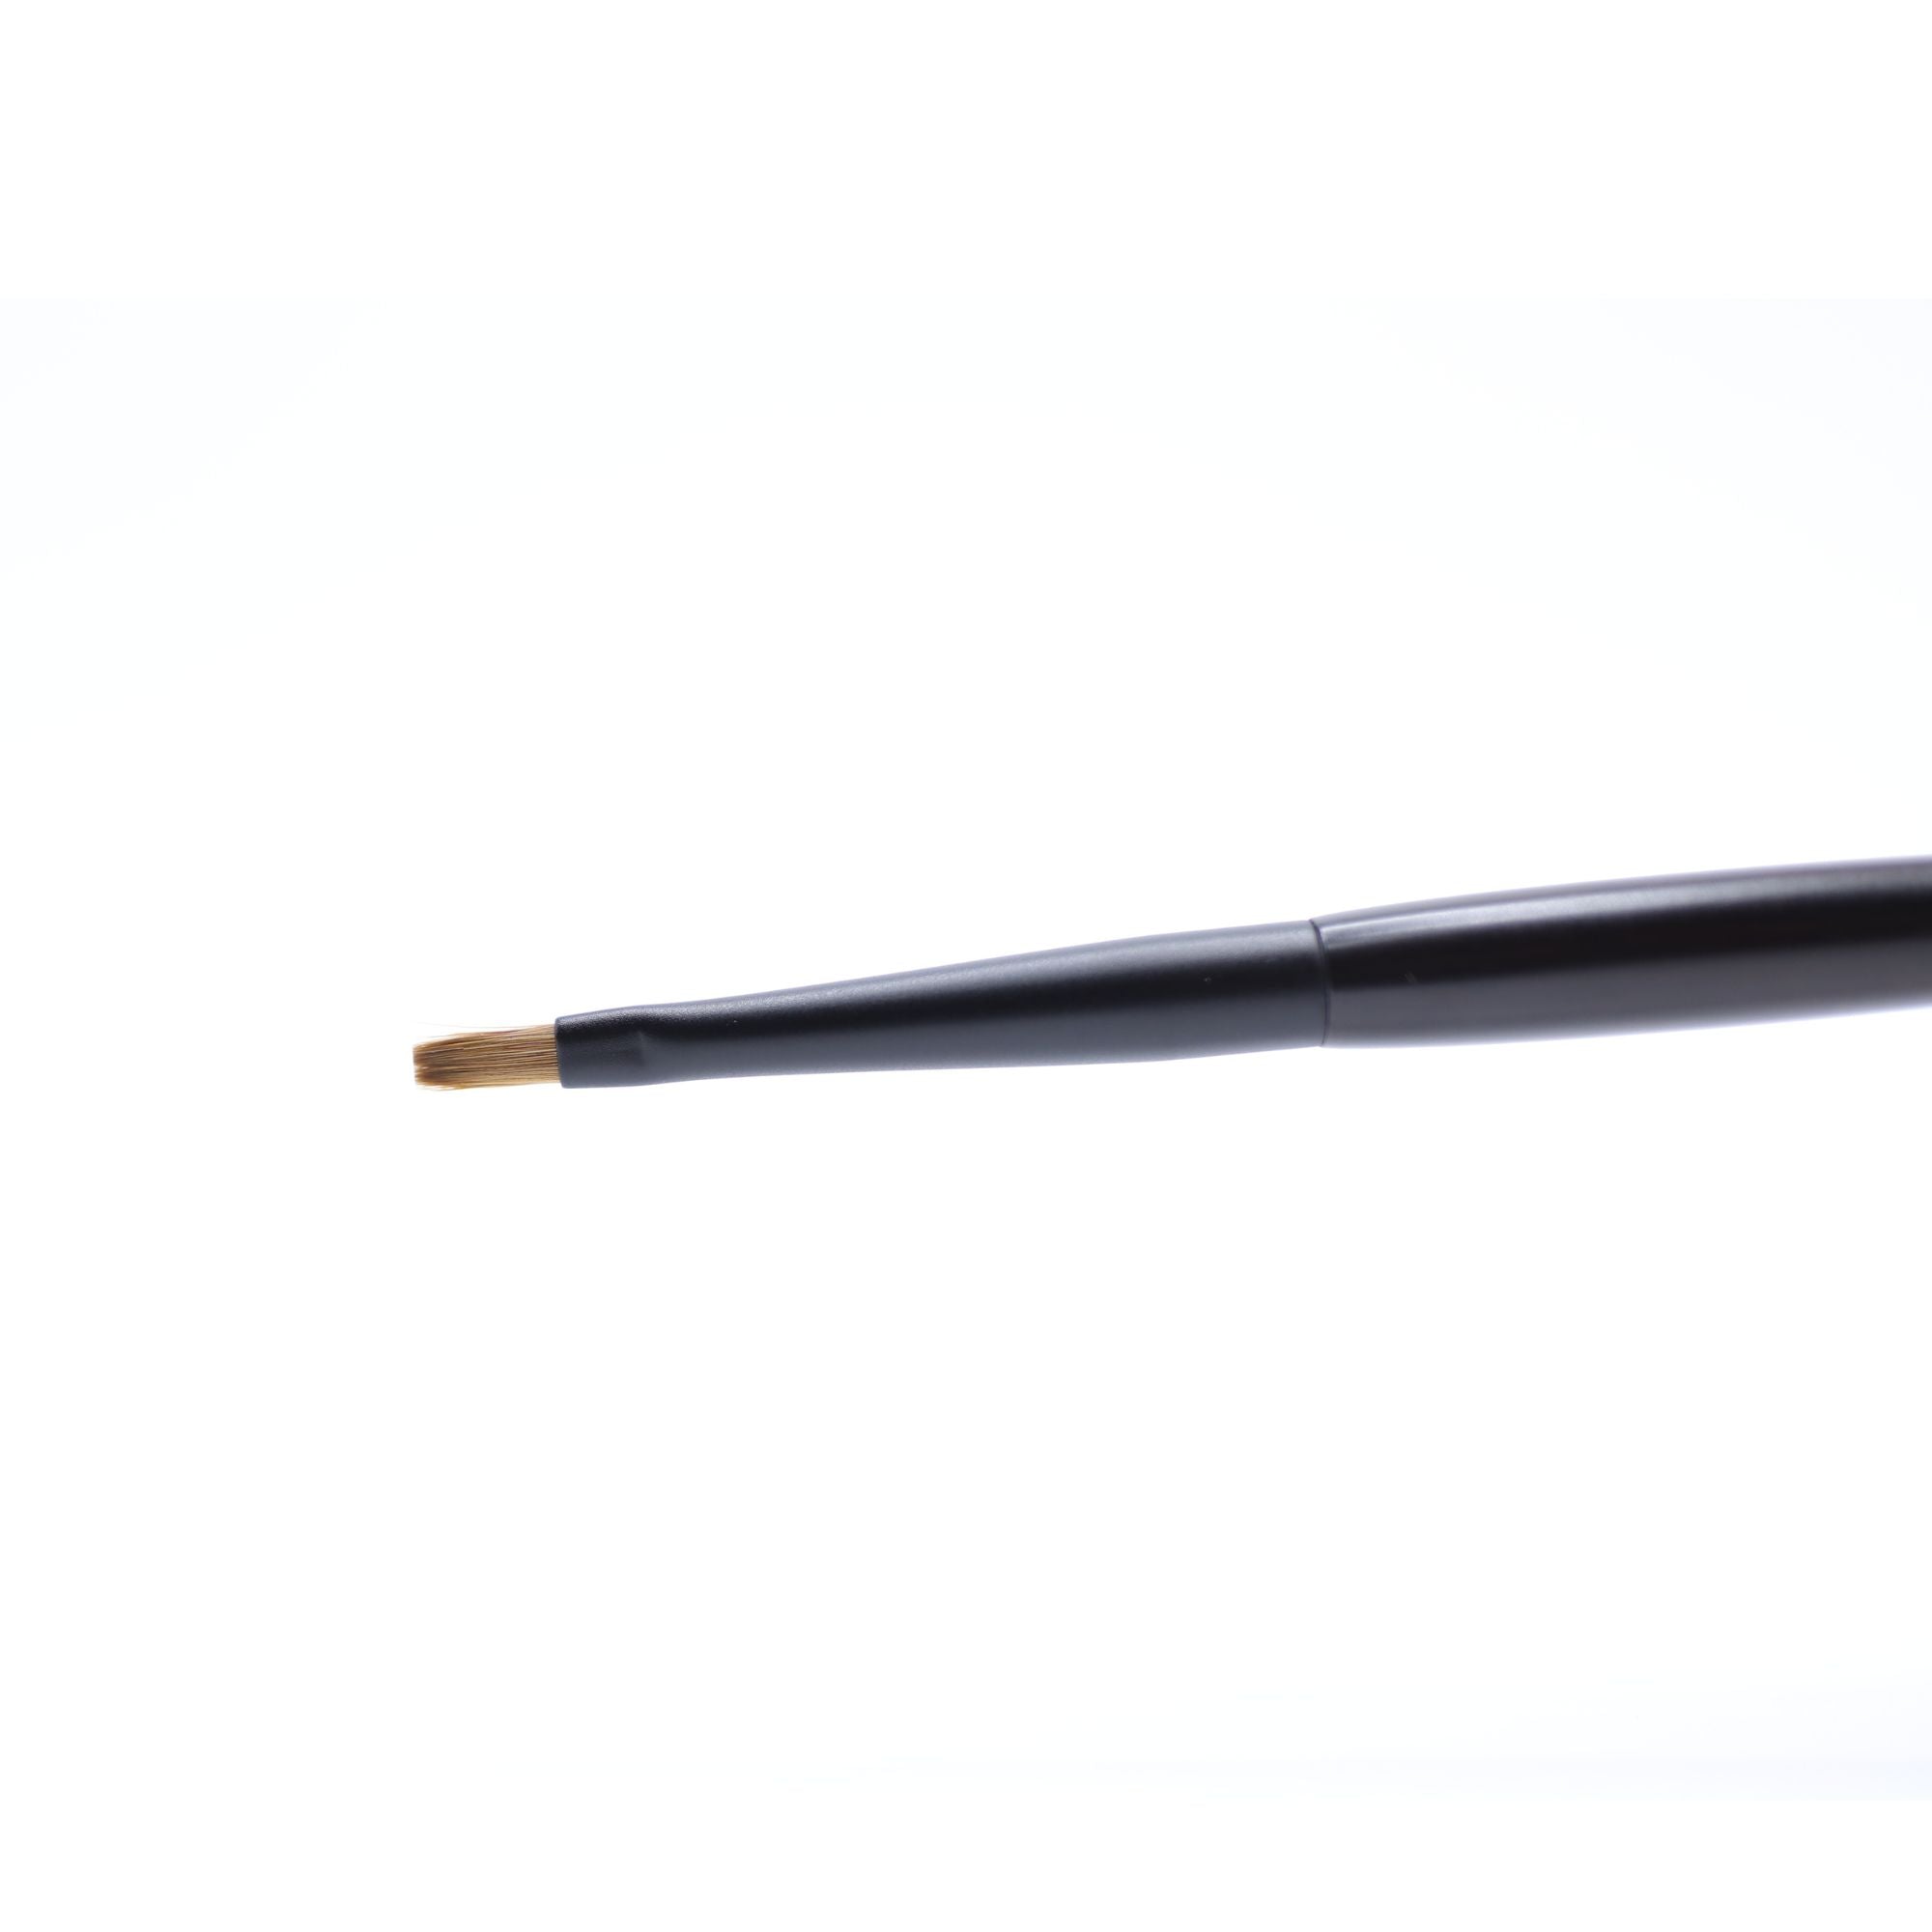 Tauhaus EH-07 Eyeliner Brush, Ode Series - Fude Beauty, Japanese Makeup Brushes